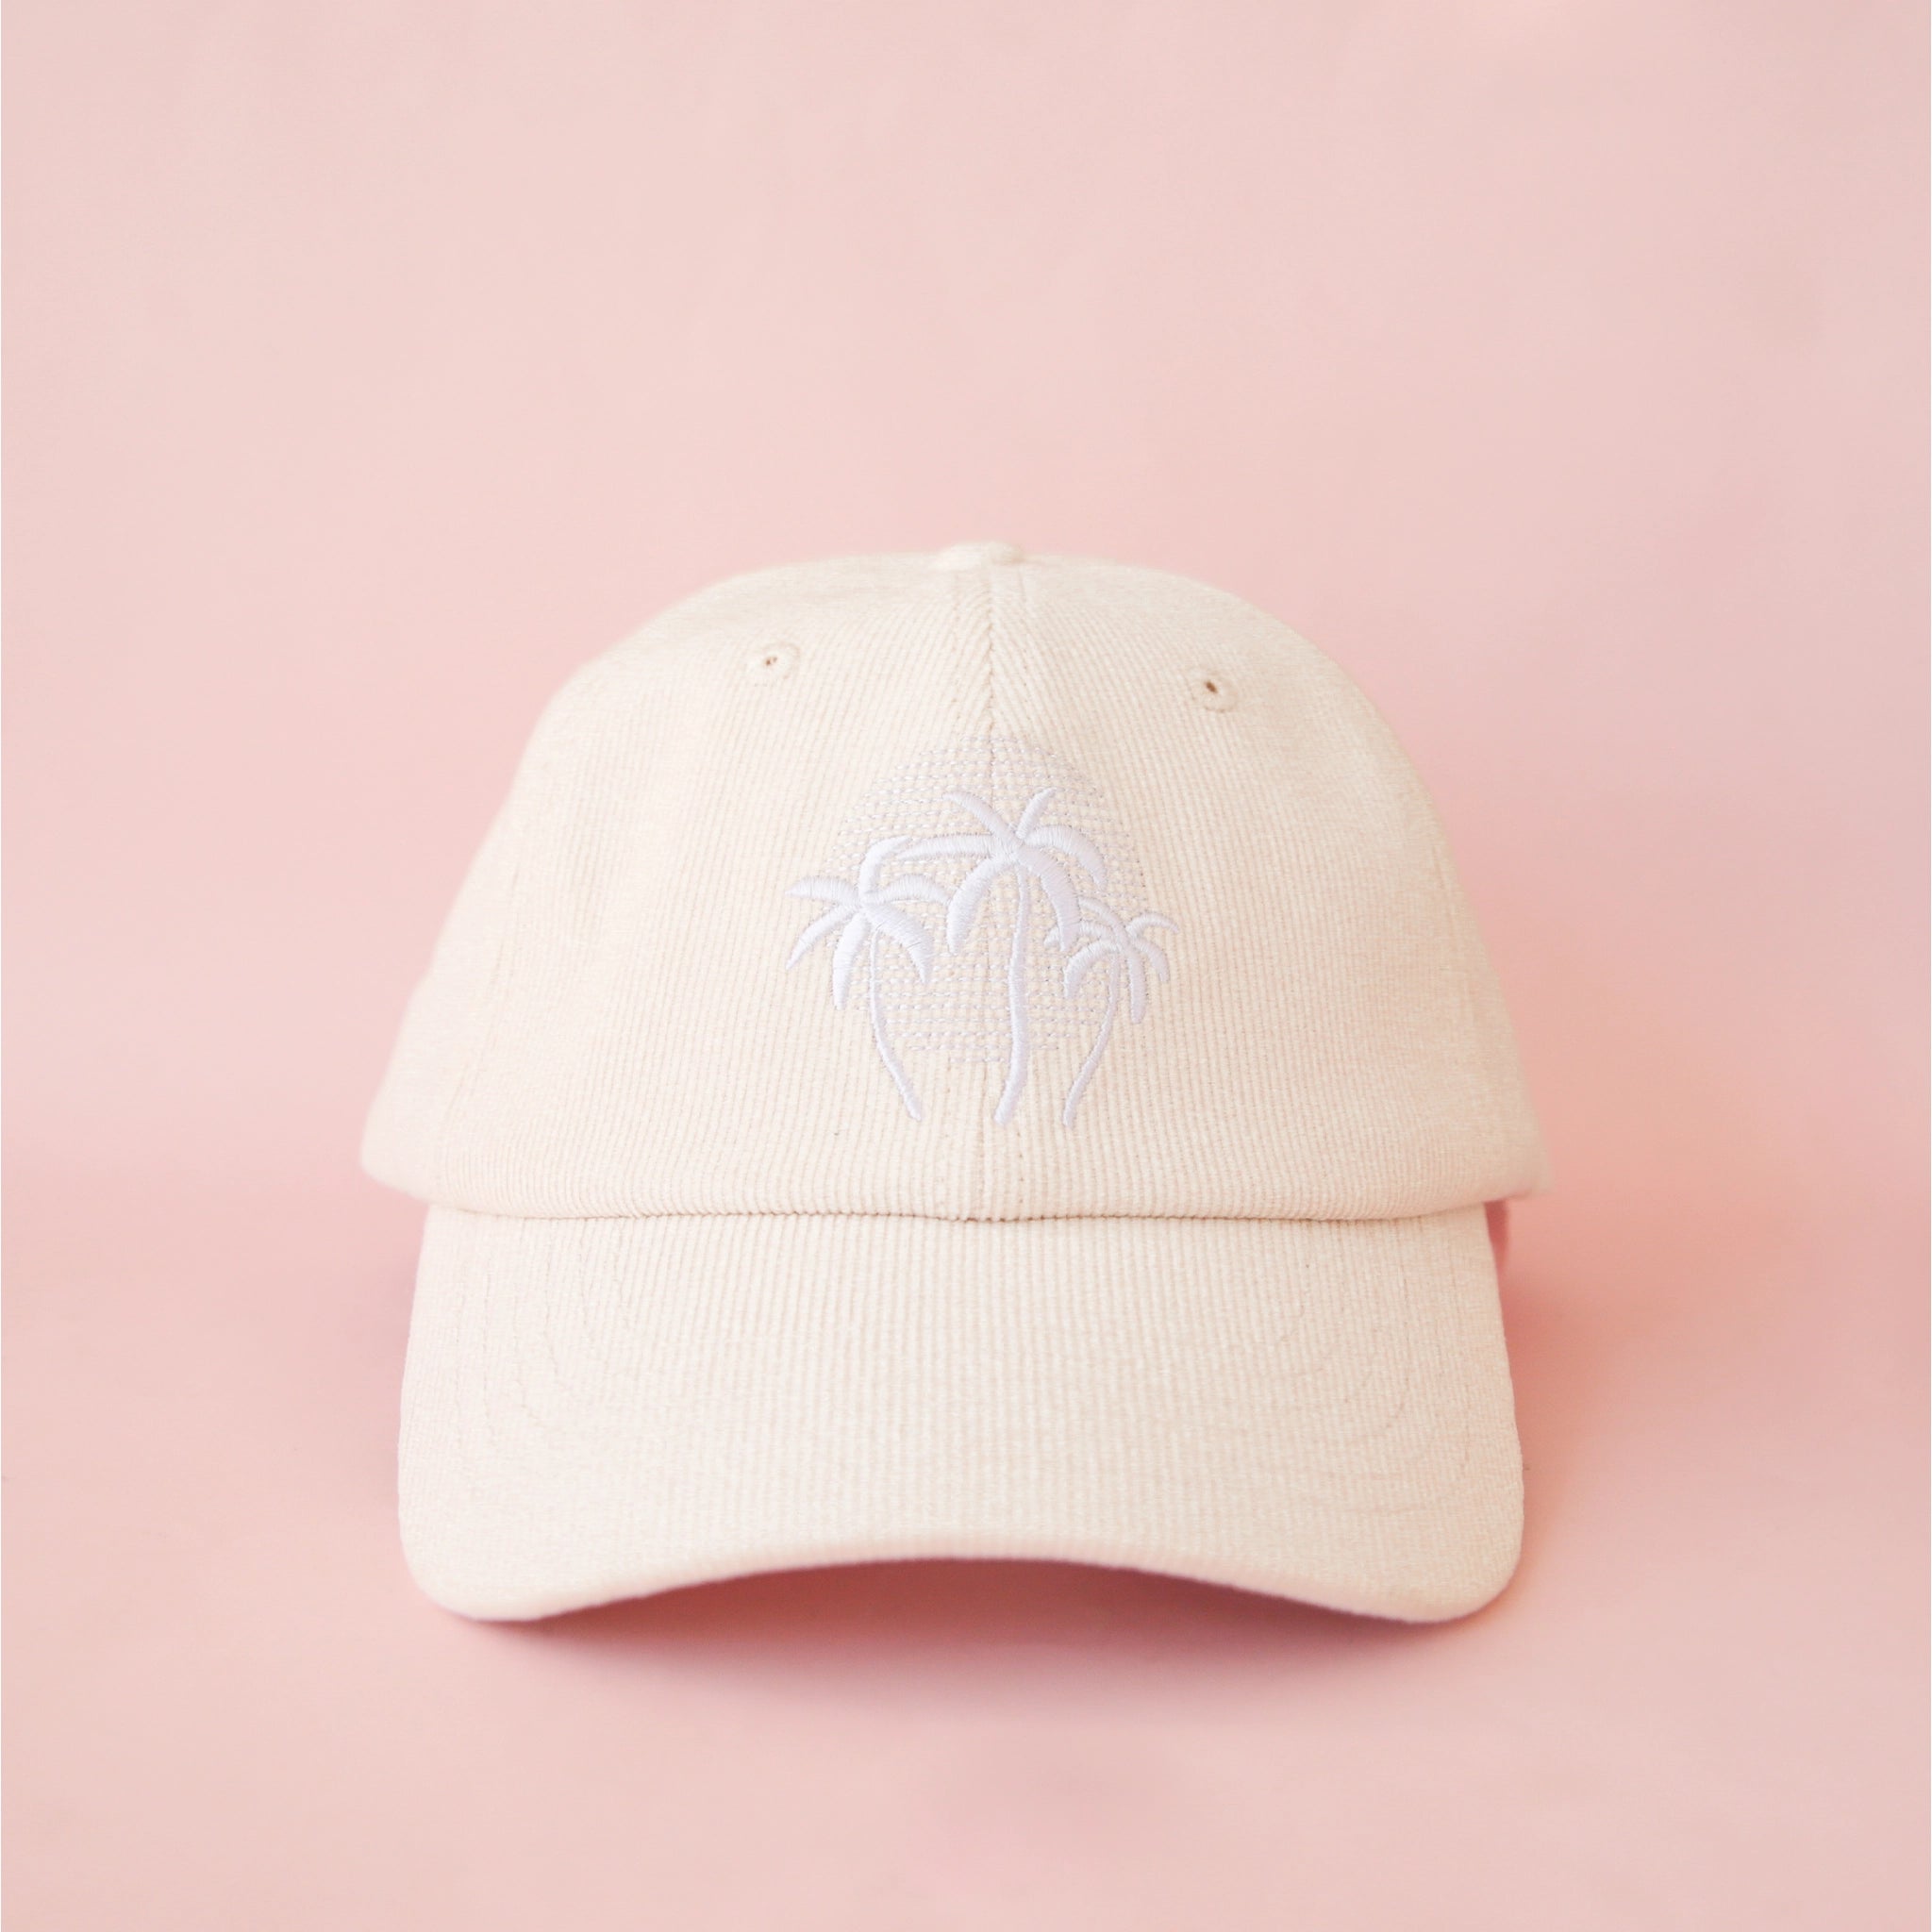 Palm Sunset Baseball Hat